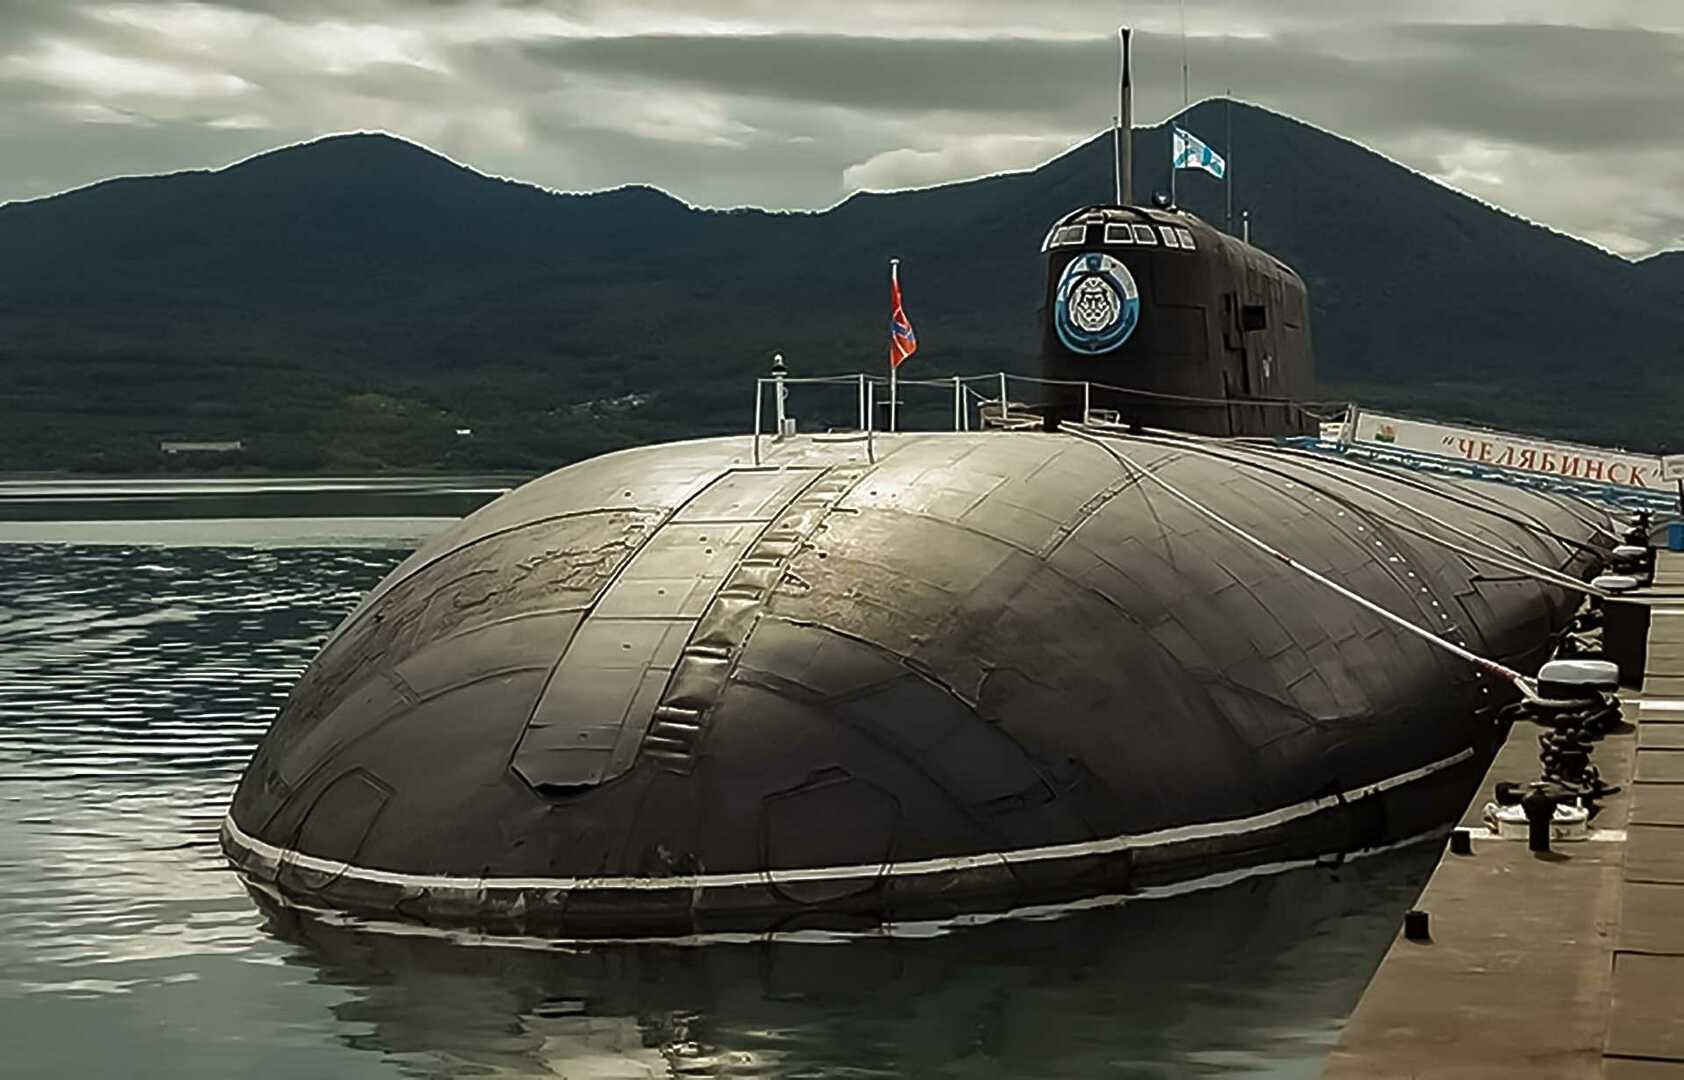 Подводная лодка тихоокеанского флота. К-442 Челябинск атомная подводная лодка проекта 949а Антей. Подводные лодки проекта 949а «Антей». Первая подводная лодка проекта 949а. АПЛ проекта 949а («Антей») «Иркутск».